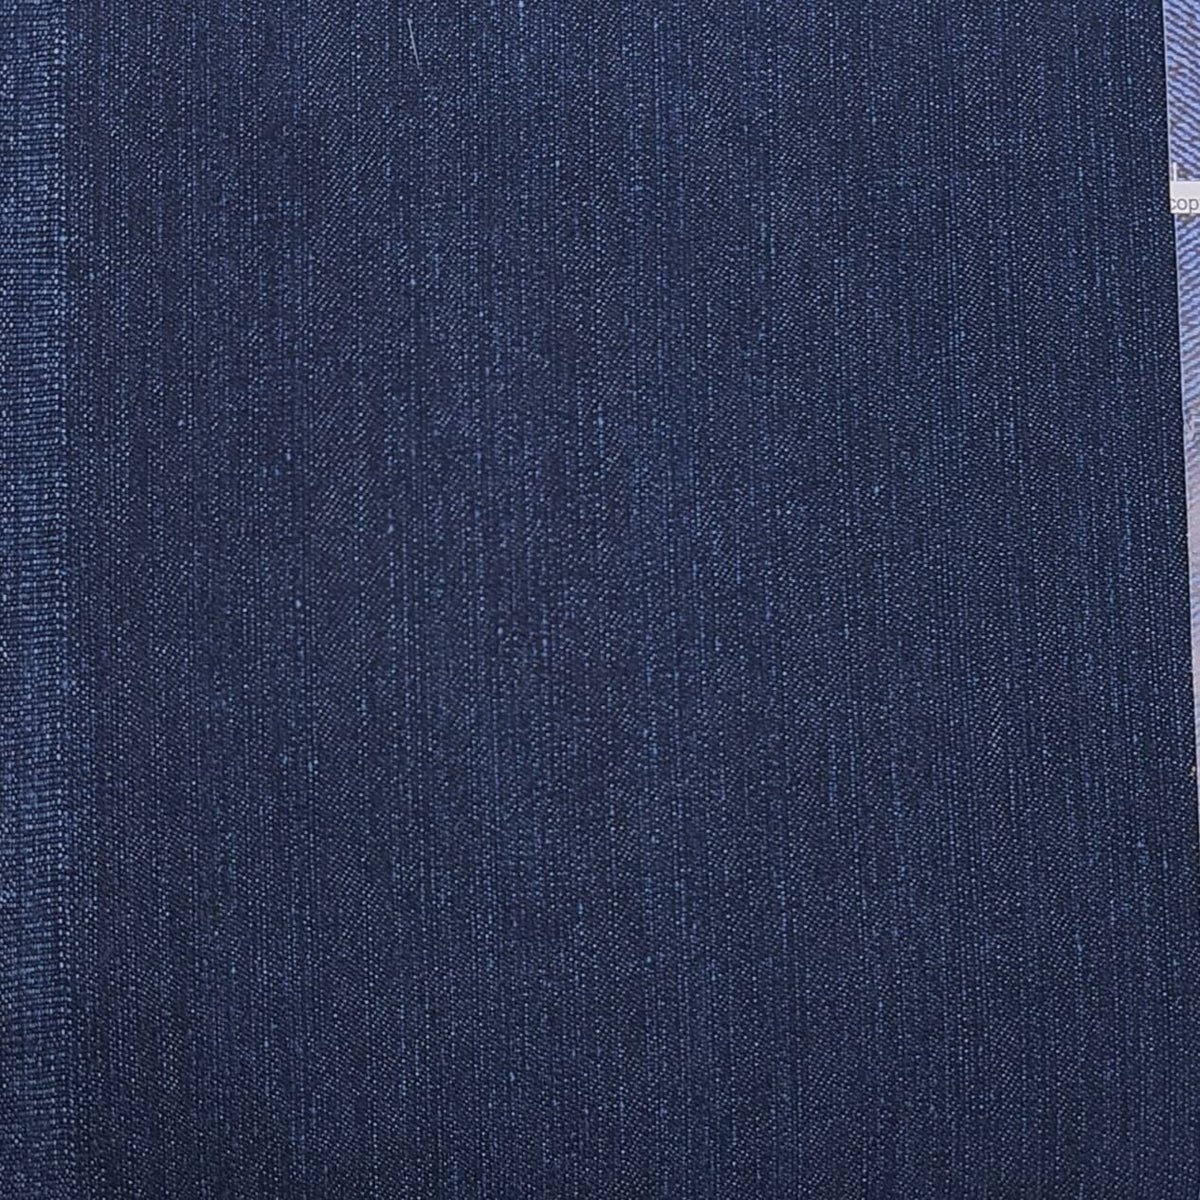 Arvind cotton denim stretchable jeans fabric colour Cobalt Blue